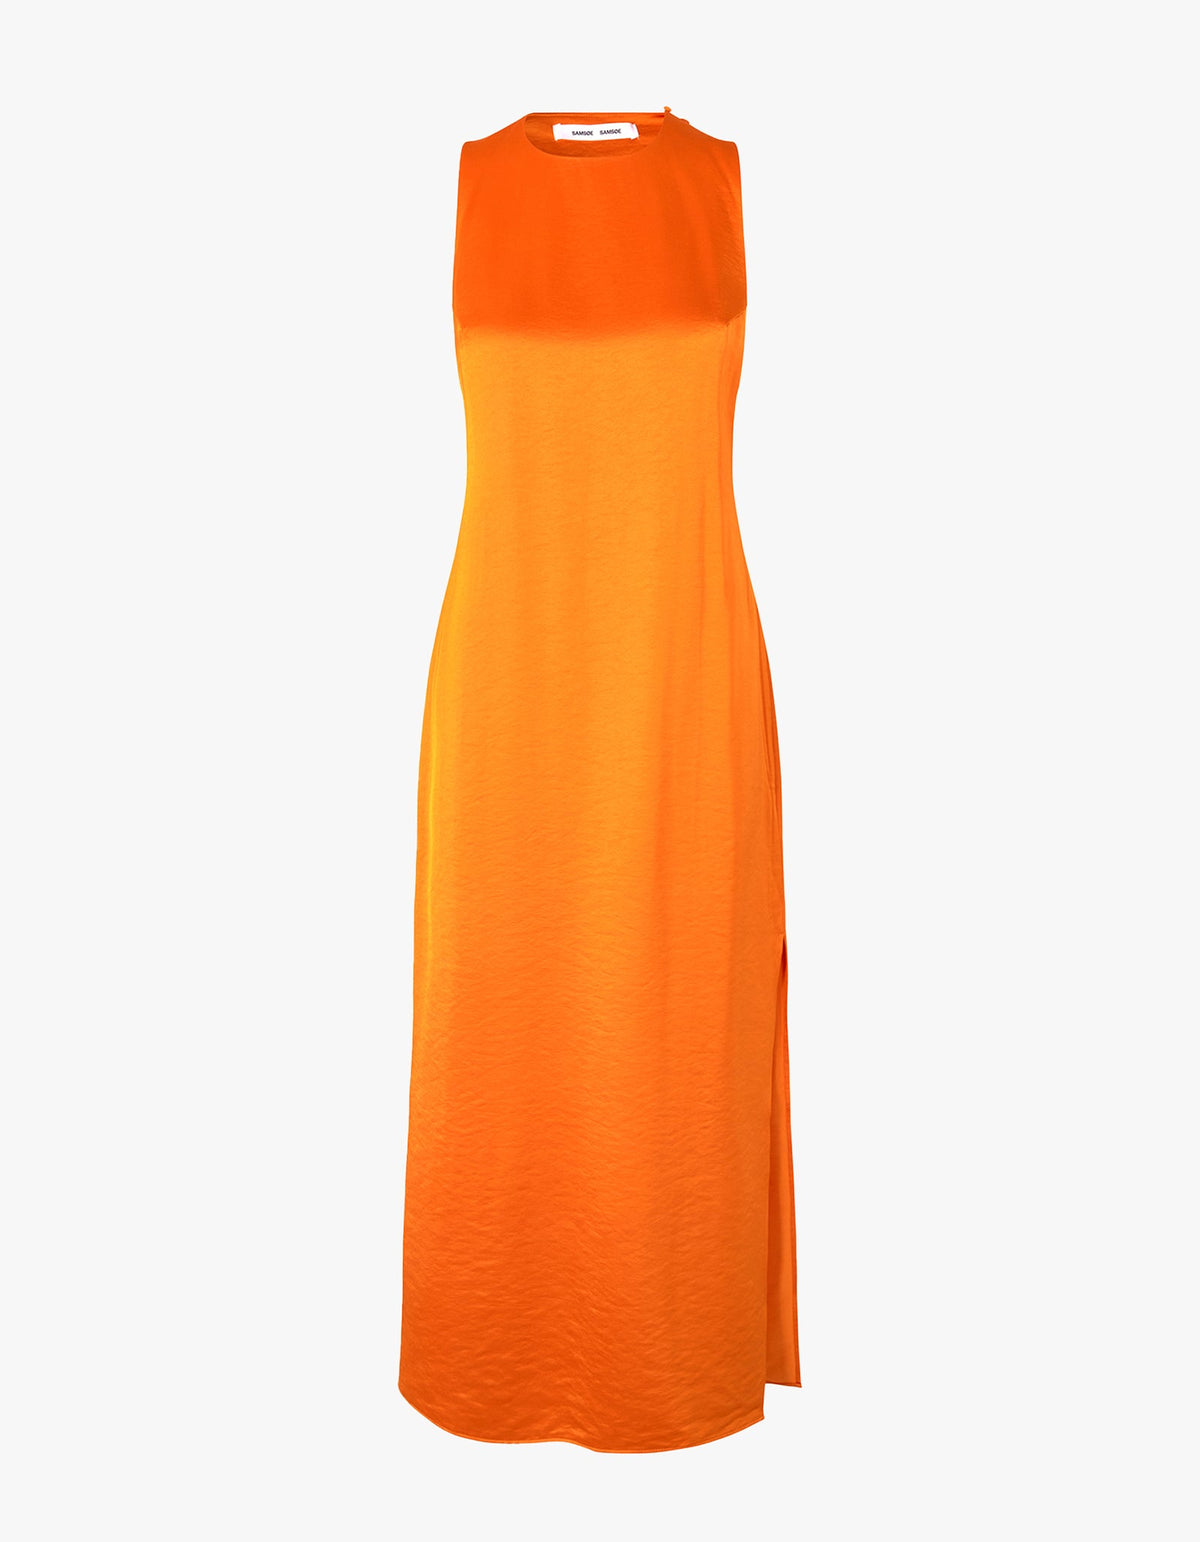 Superette | Ellie Dress 14773 - Russet Orange